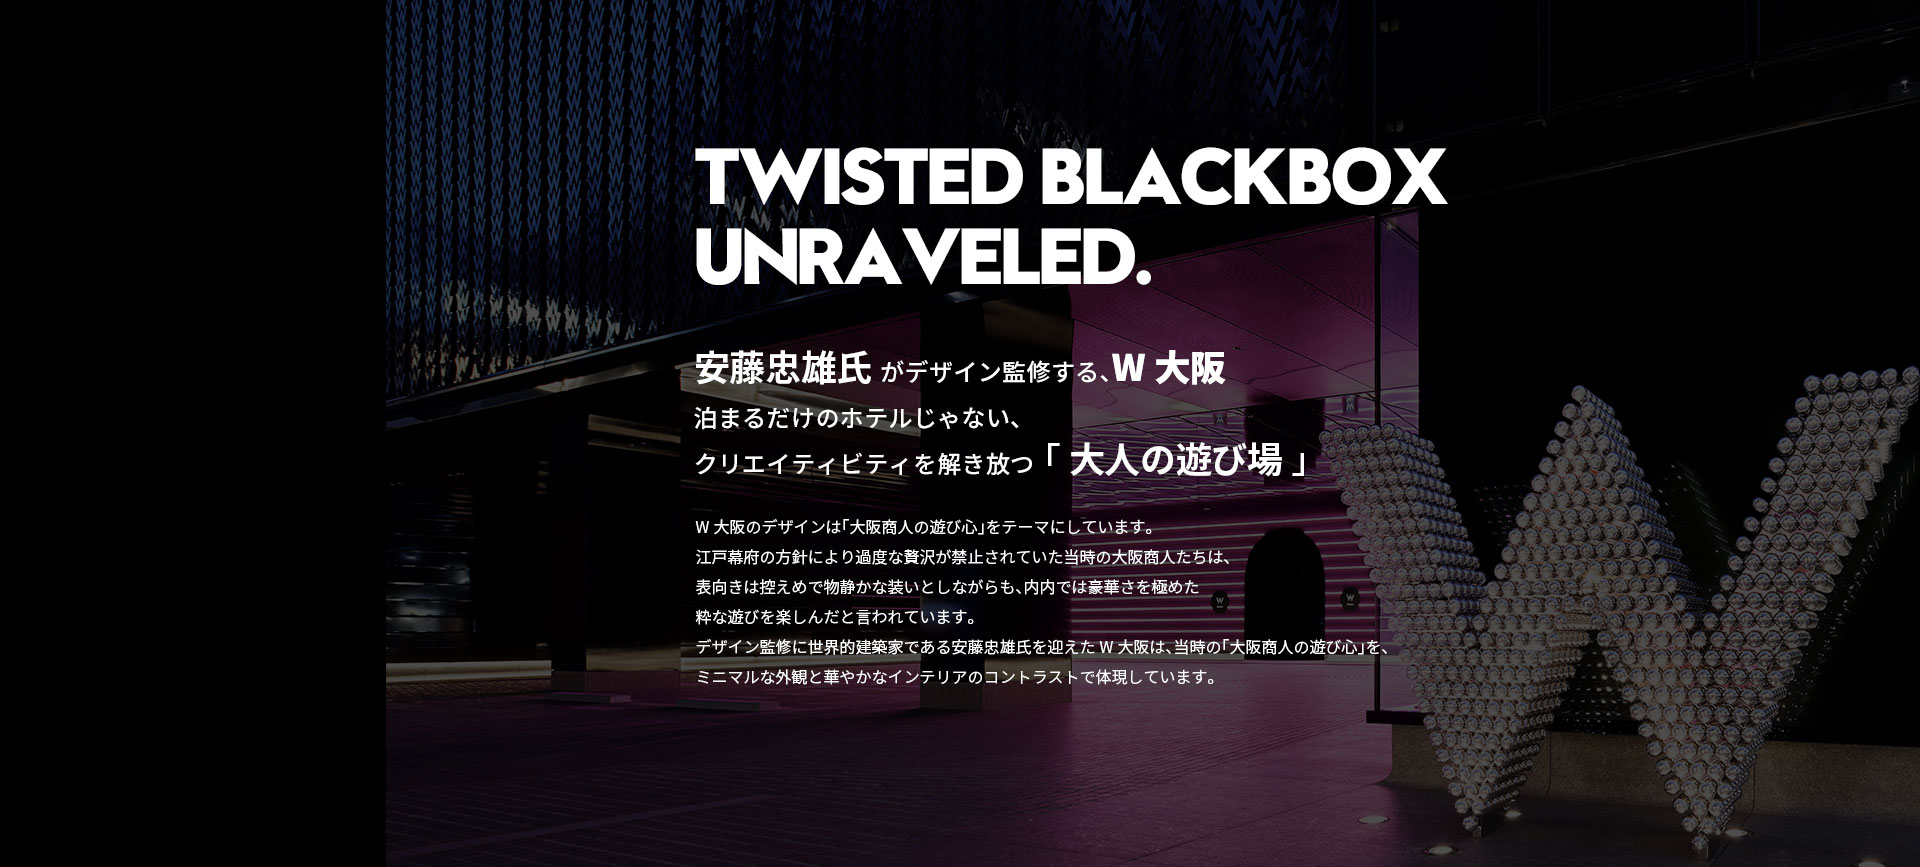 Twisted BlackBox Unraveled.